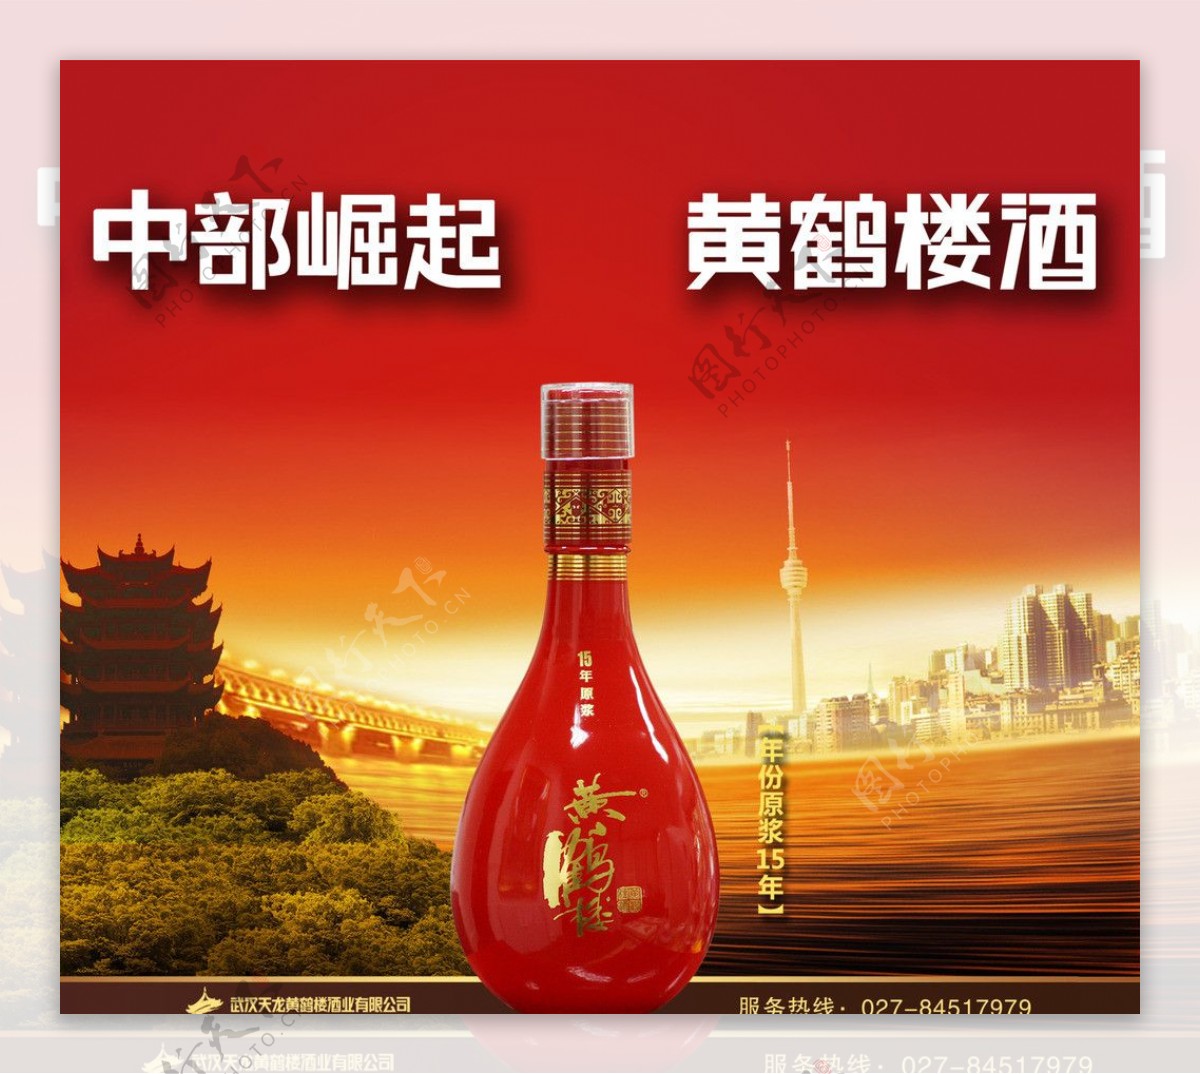 黄鹤楼酒广告图片